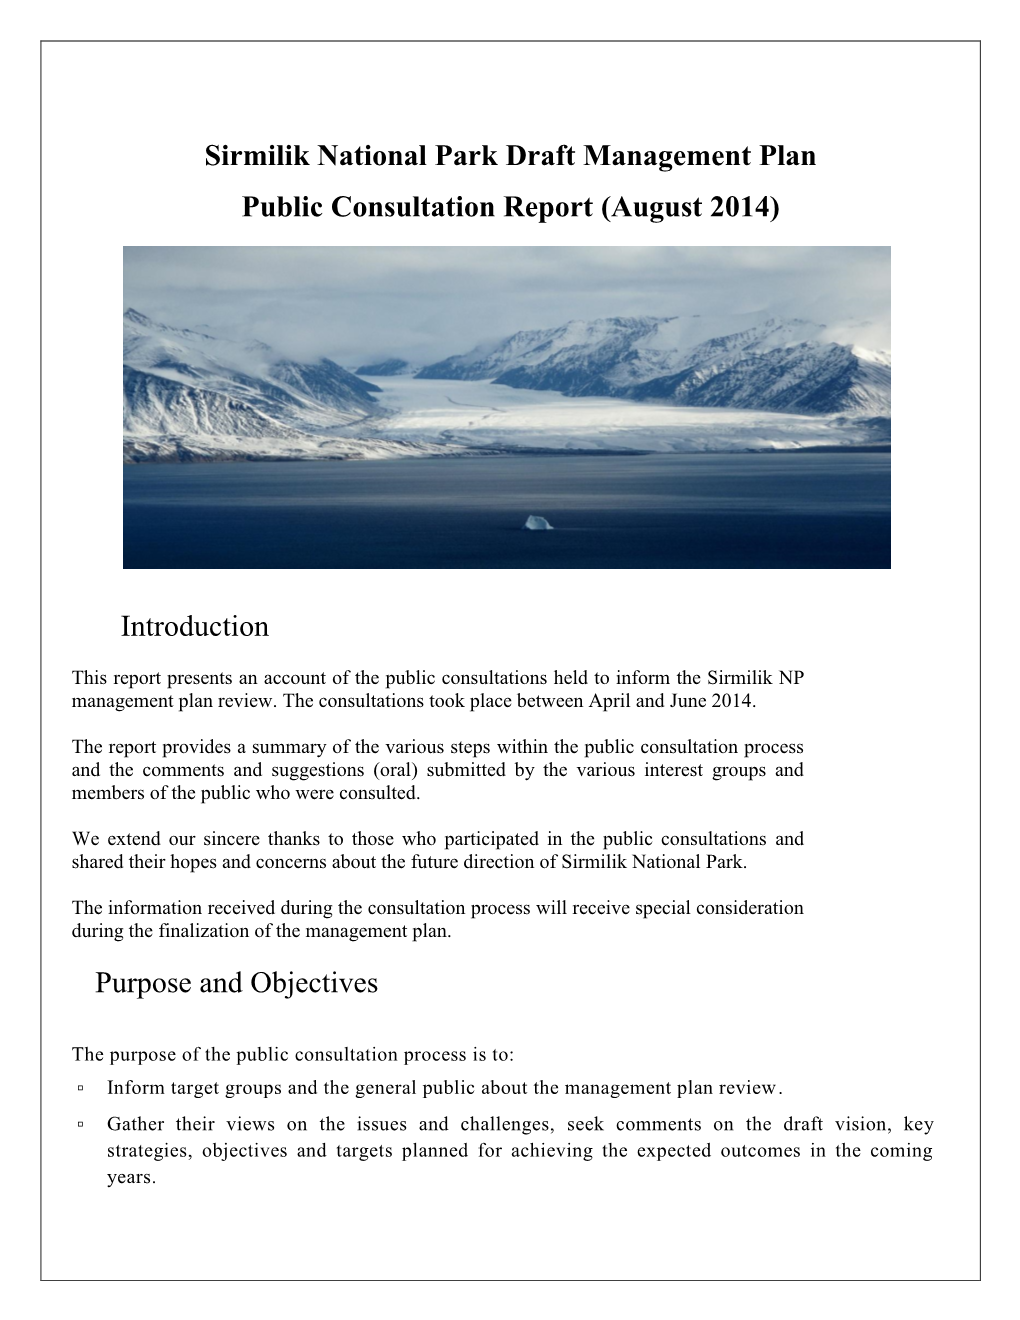 Sirmilik National Park Draft Management Plan Public Consultation Report (August 2014)